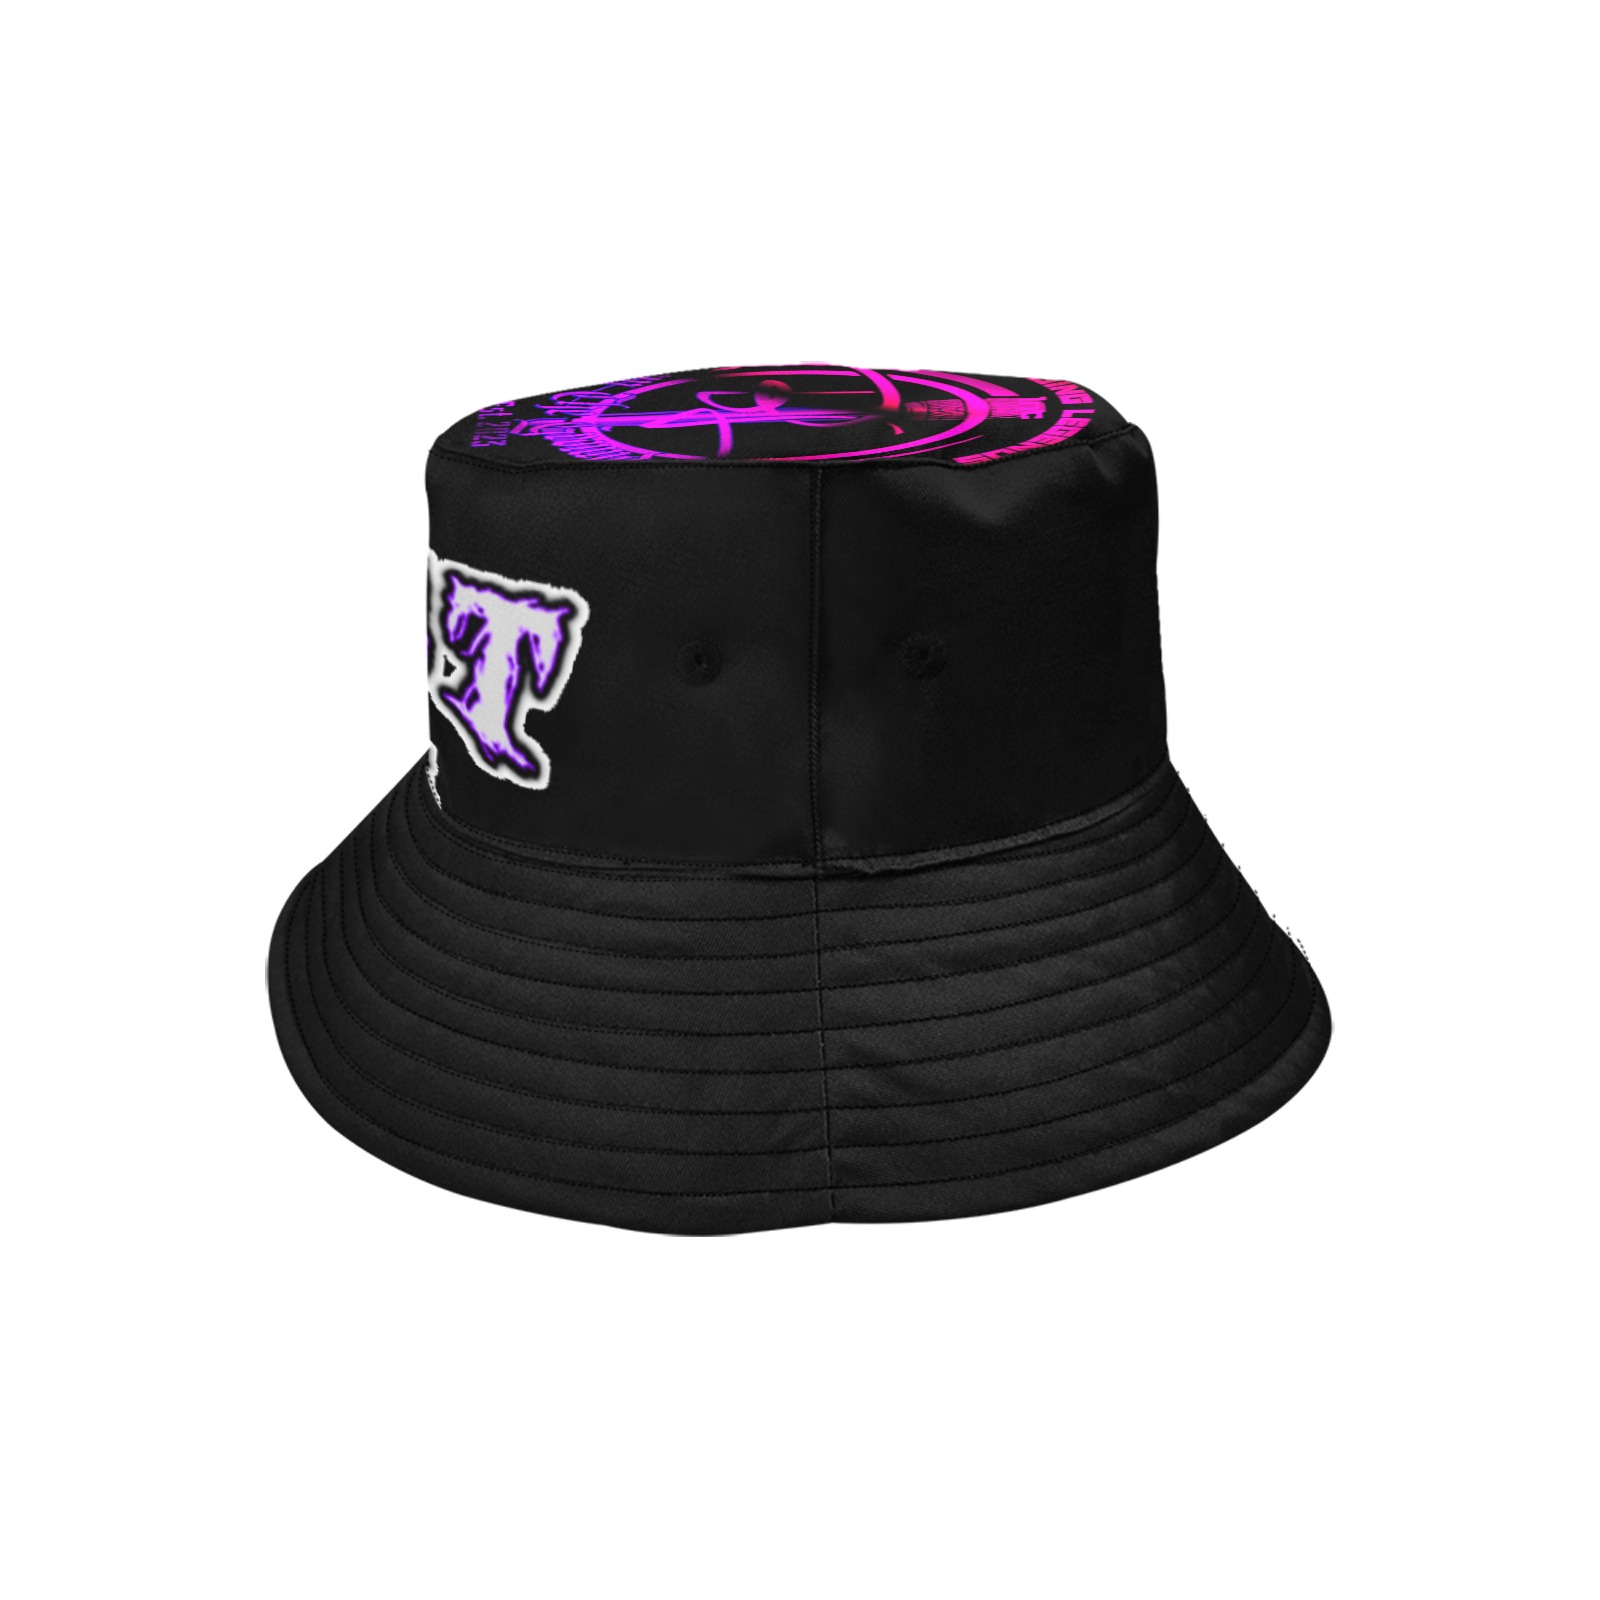 Worstdaddyever Bucket Black Unisex Summer Bucket Hat